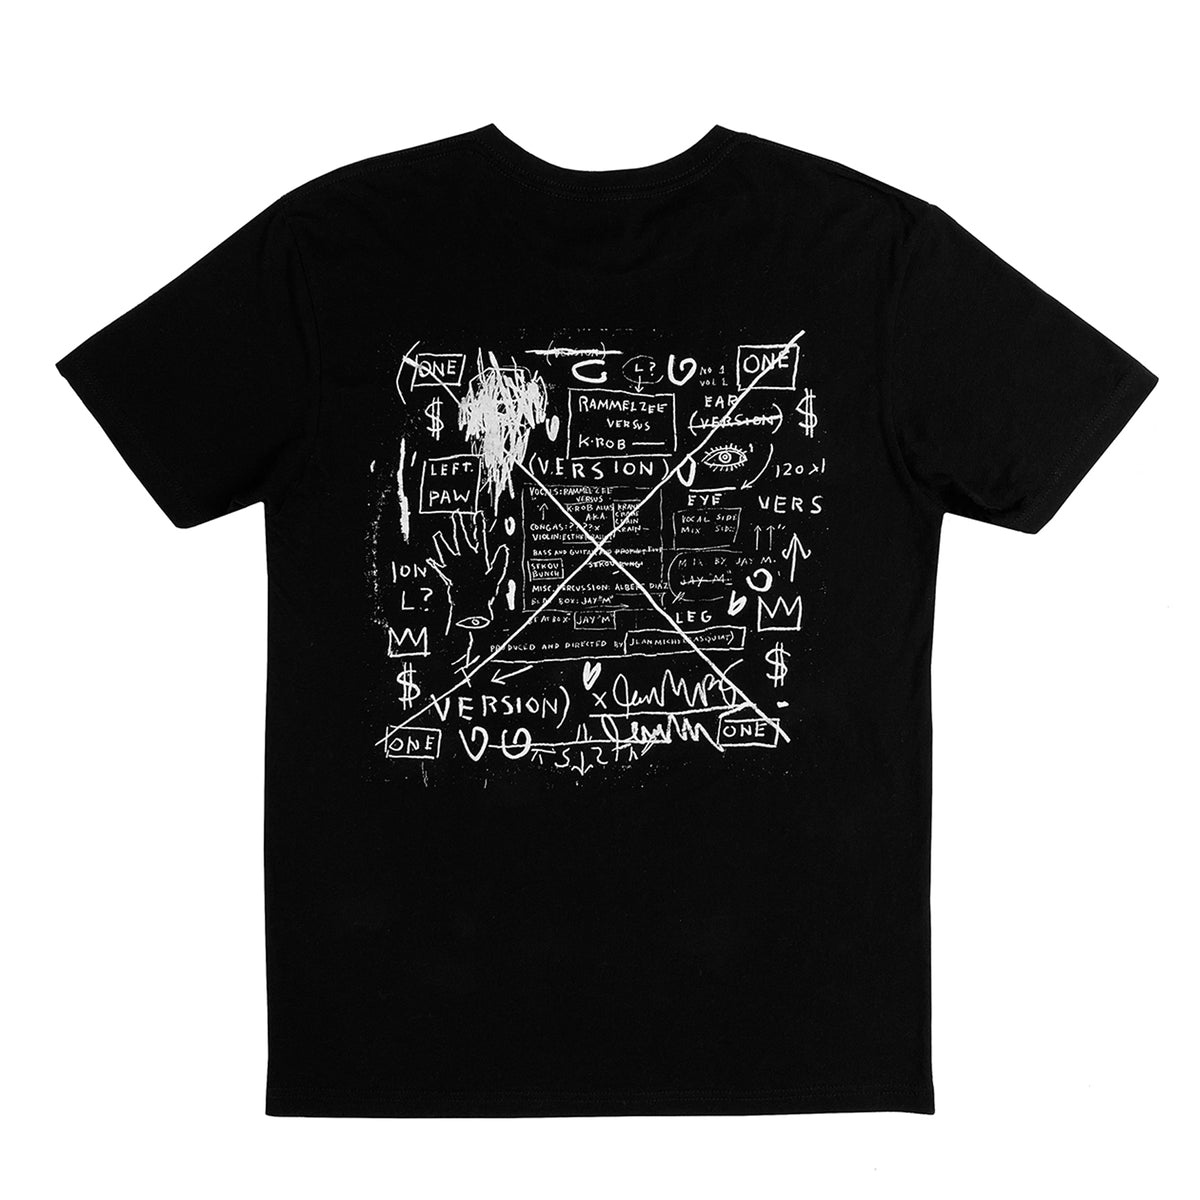 Basquiat "Beat Bop" T-Shirt